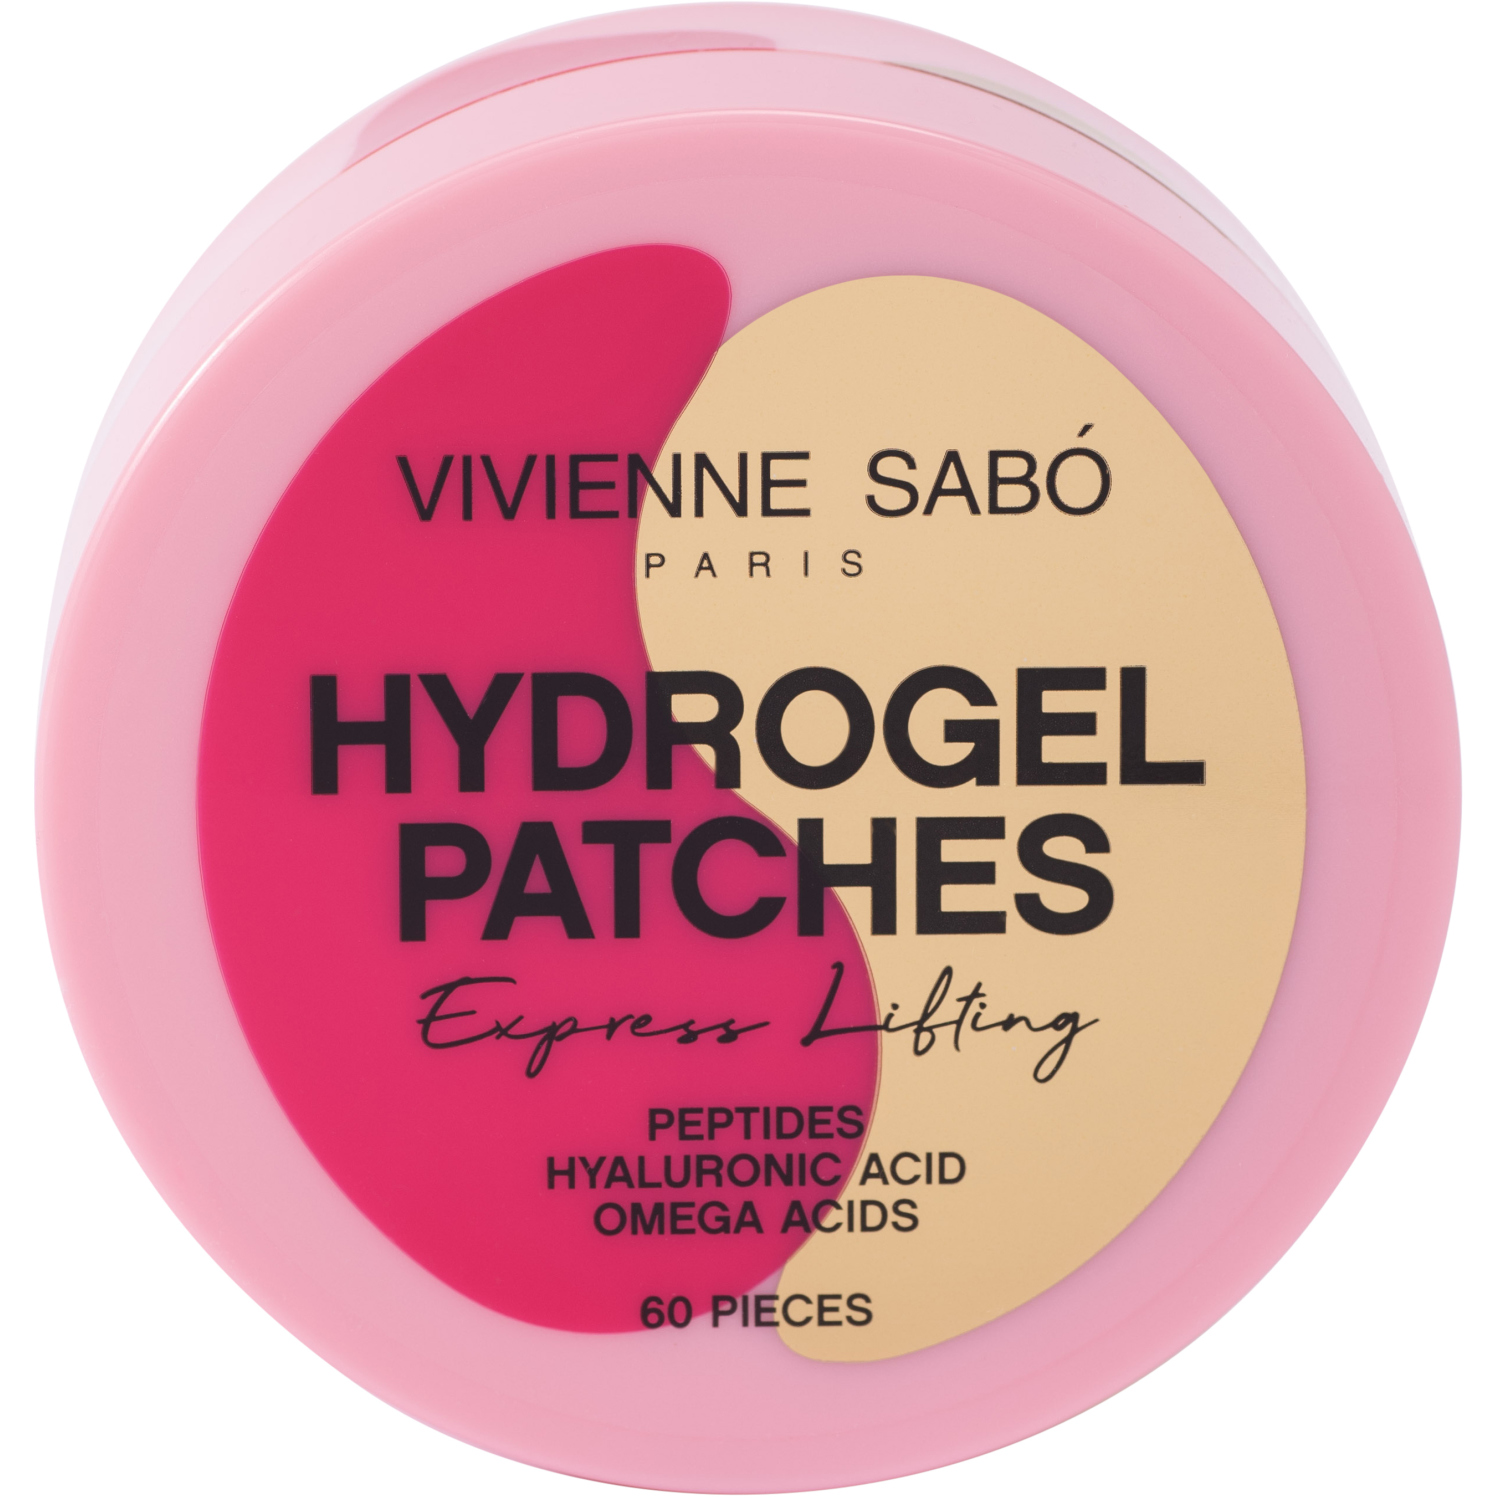 Гидрогелевые патчи для глаз Vivienne Sabo HYDROGEL PATCHES, снимают отечность и избавляют от темных кругов под глазами, прозрачные, розовые, 60 штук гидрогелевые патчи для глаз